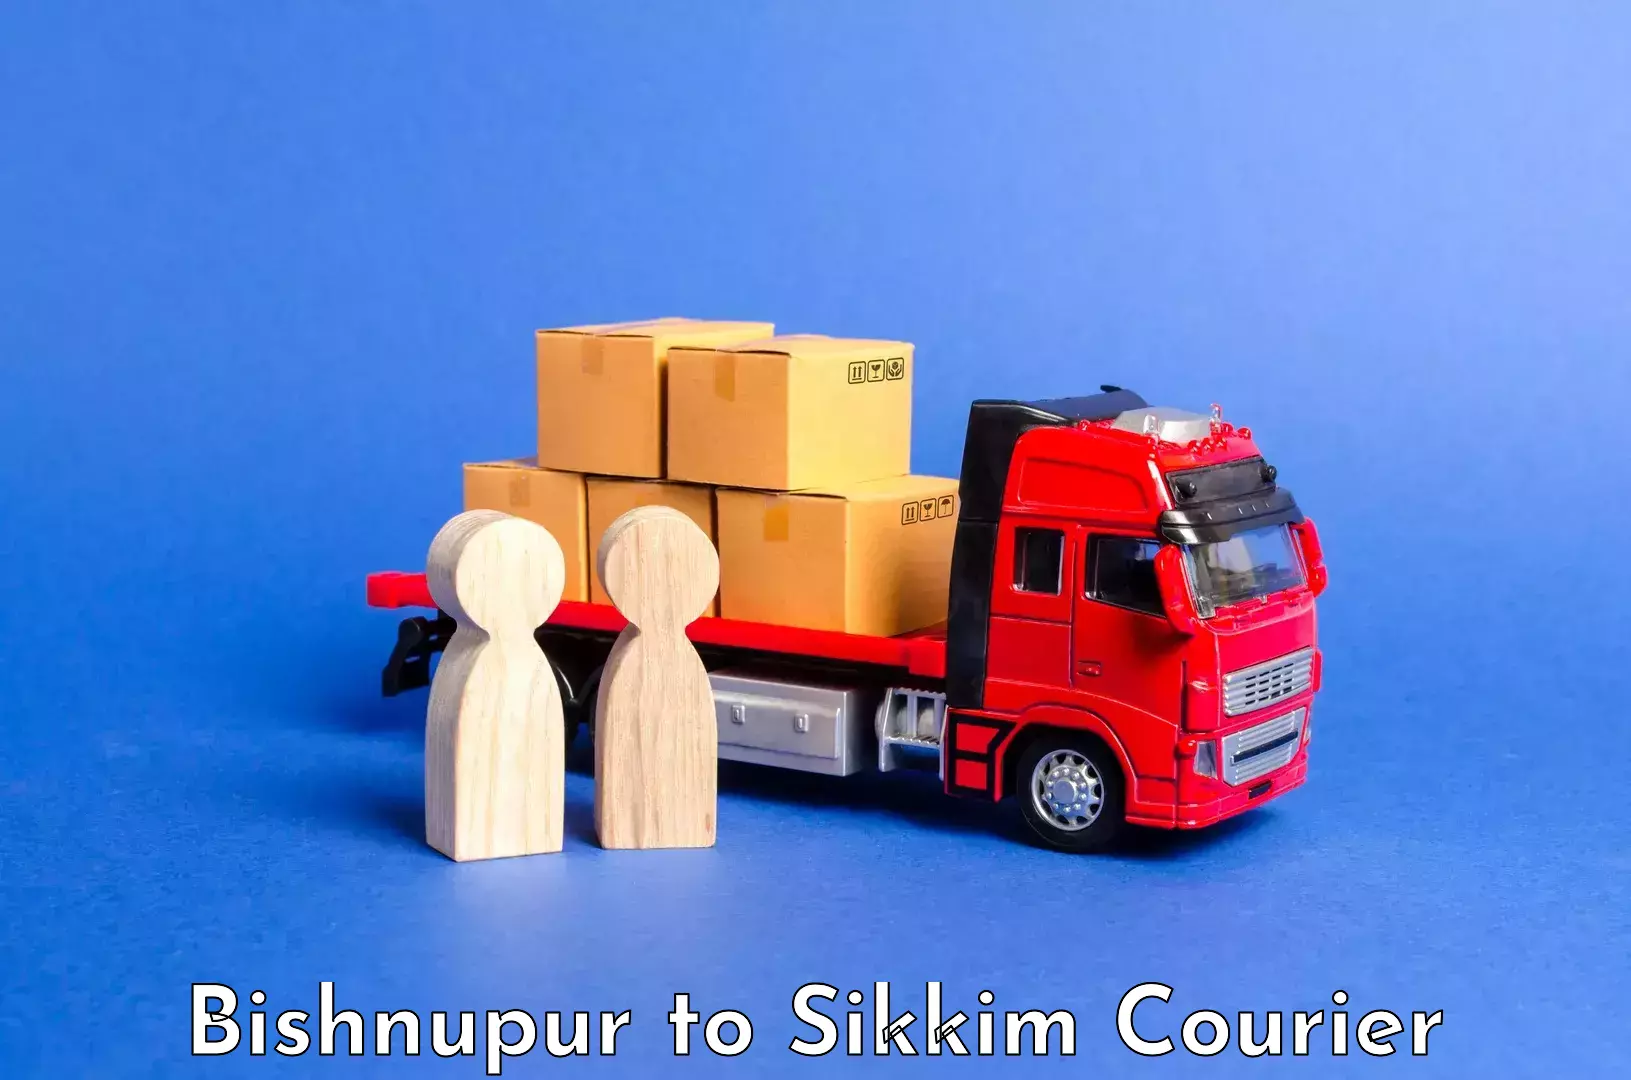 Luggage shipment tracking Bishnupur to Mangan